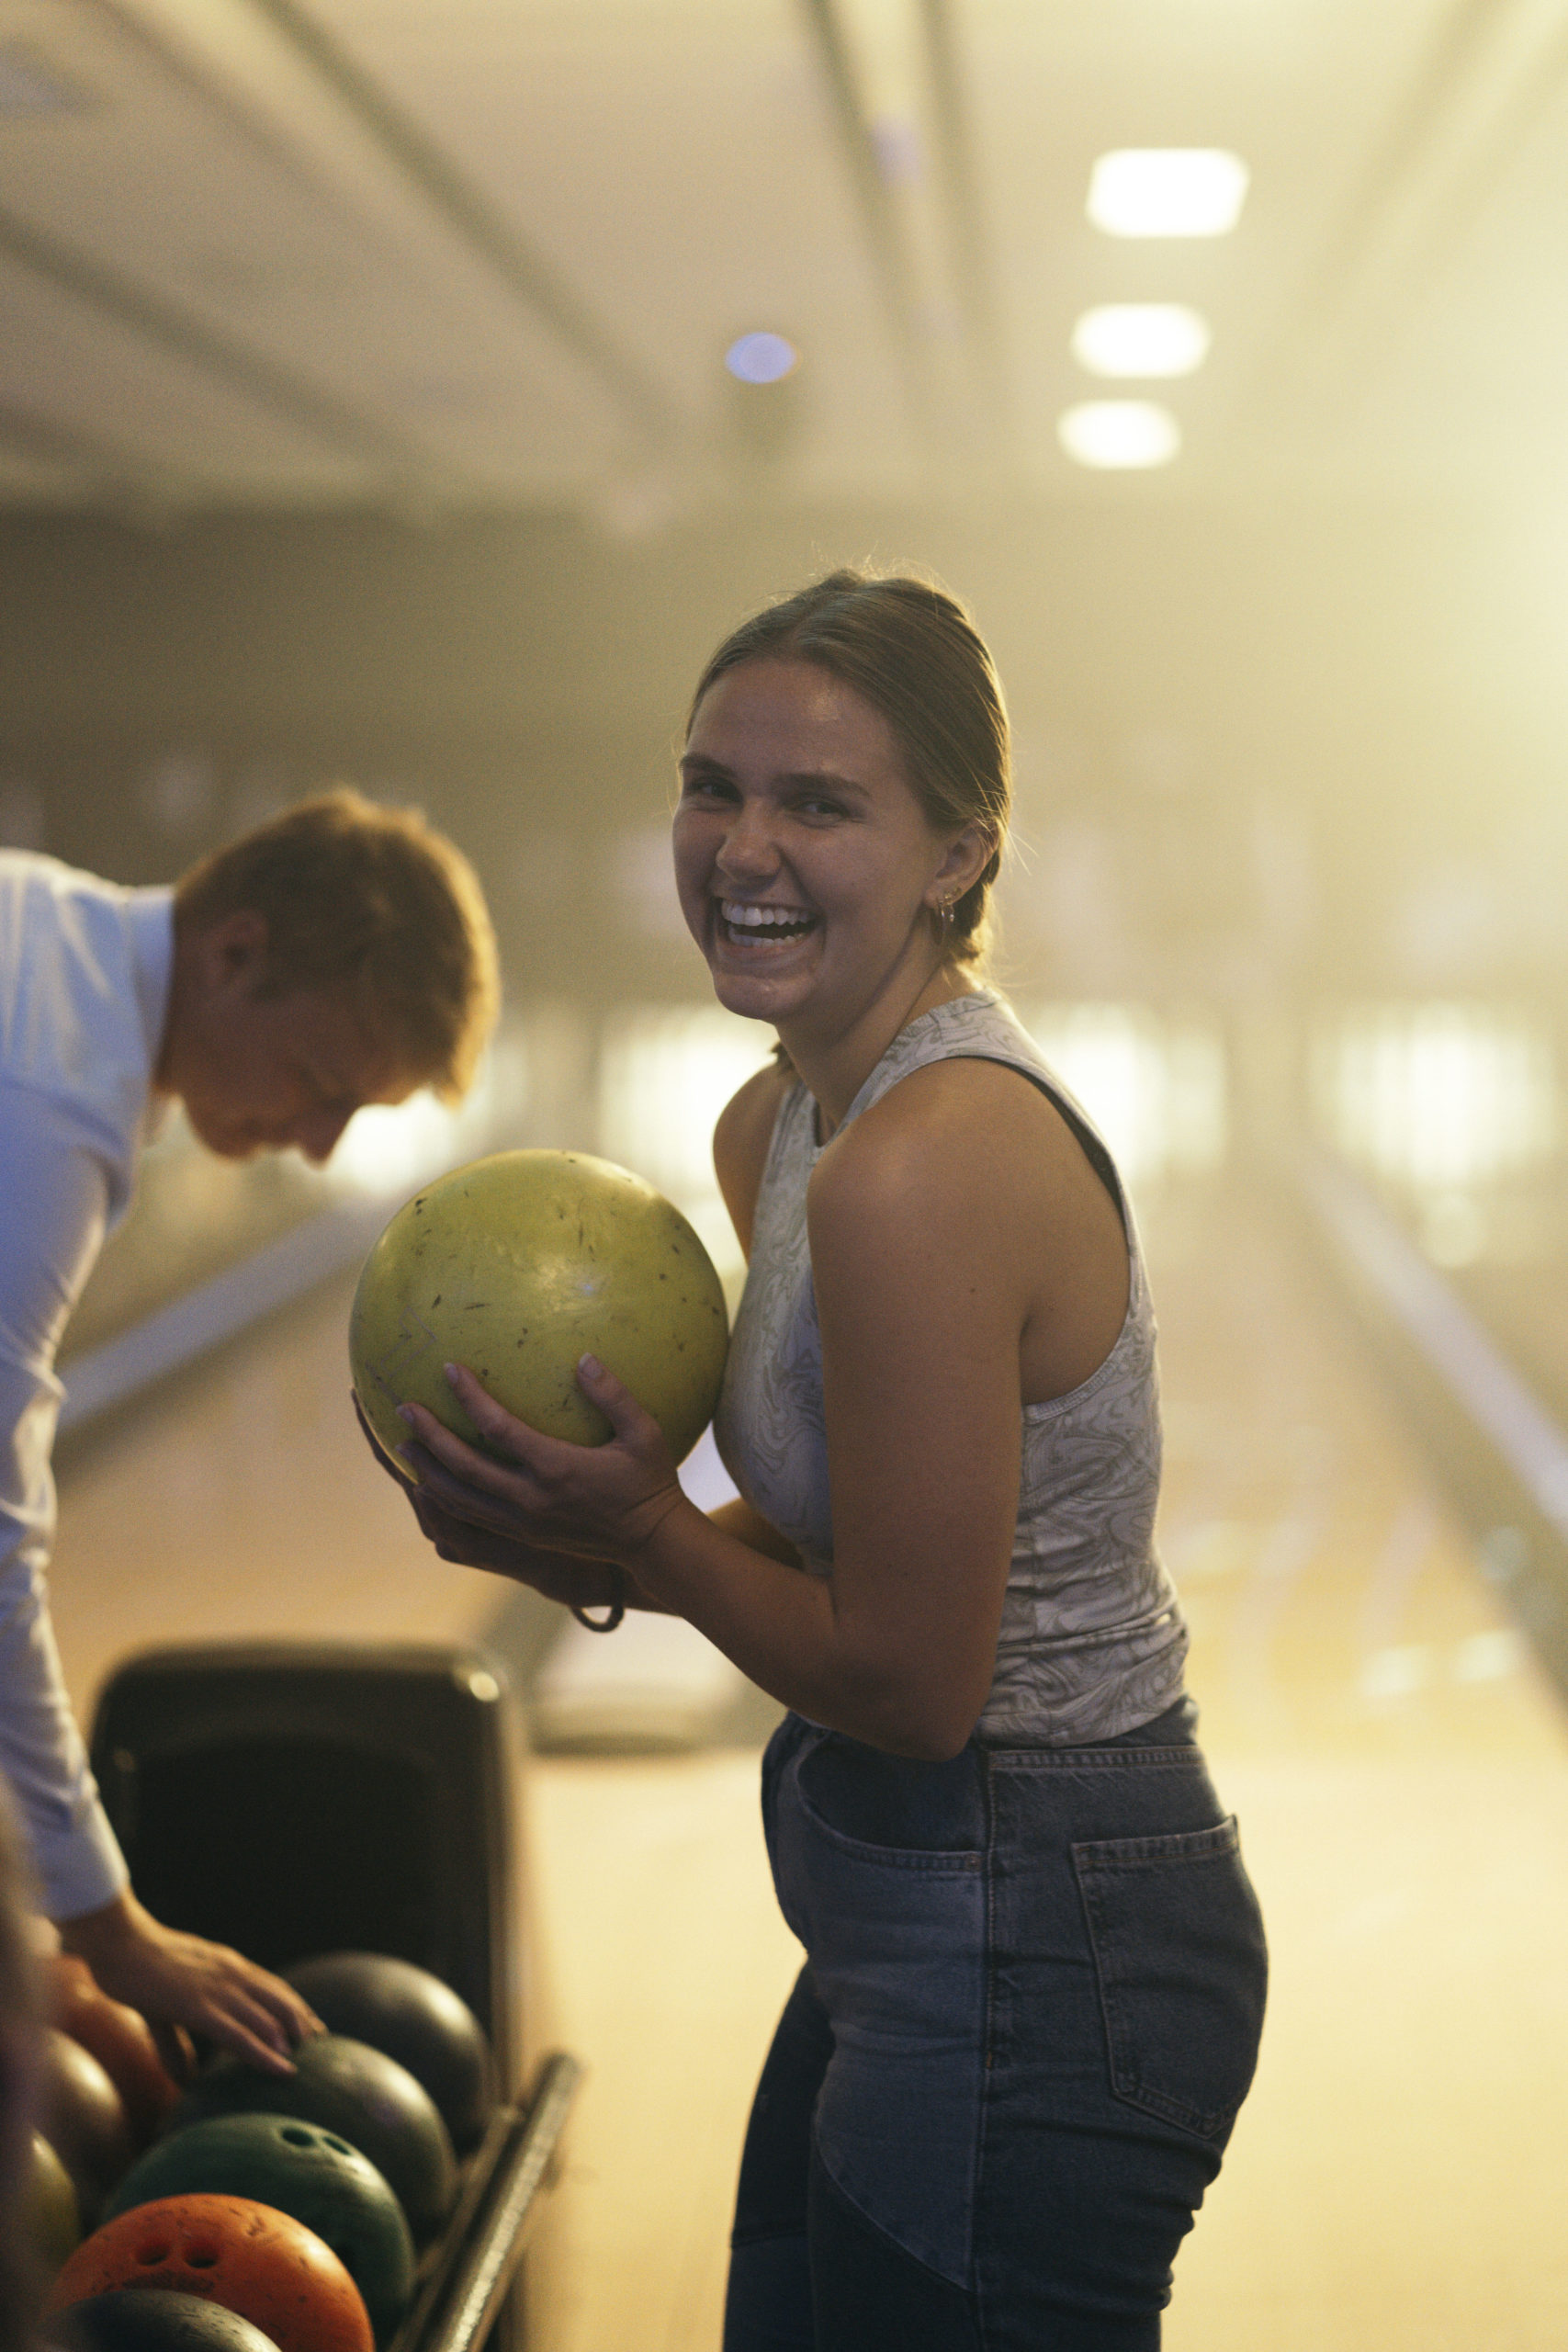 Pige kigger ind i kameraet, hvor hun griner og holder en gul bowlingkugle